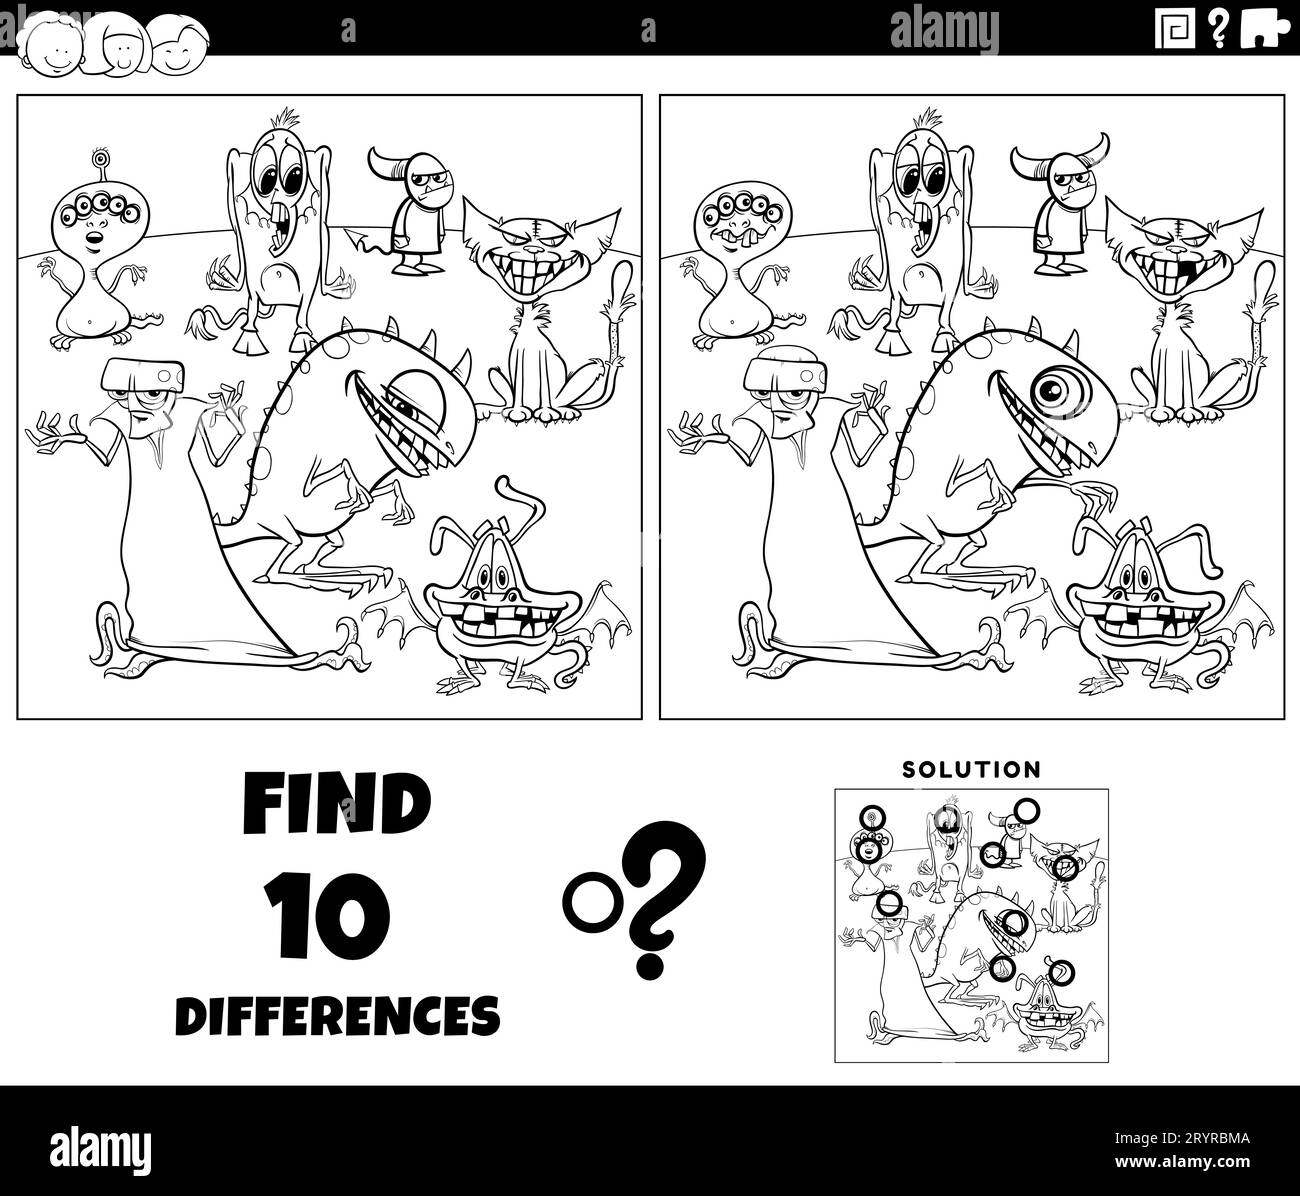 Schwarz-weißer Cartoon, der zeigt, wie man die Unterschiede zwischen den Bildern findet pädagogische Aktivitäten mit Monstern Fantasy Charaktere Malseite Stockfoto